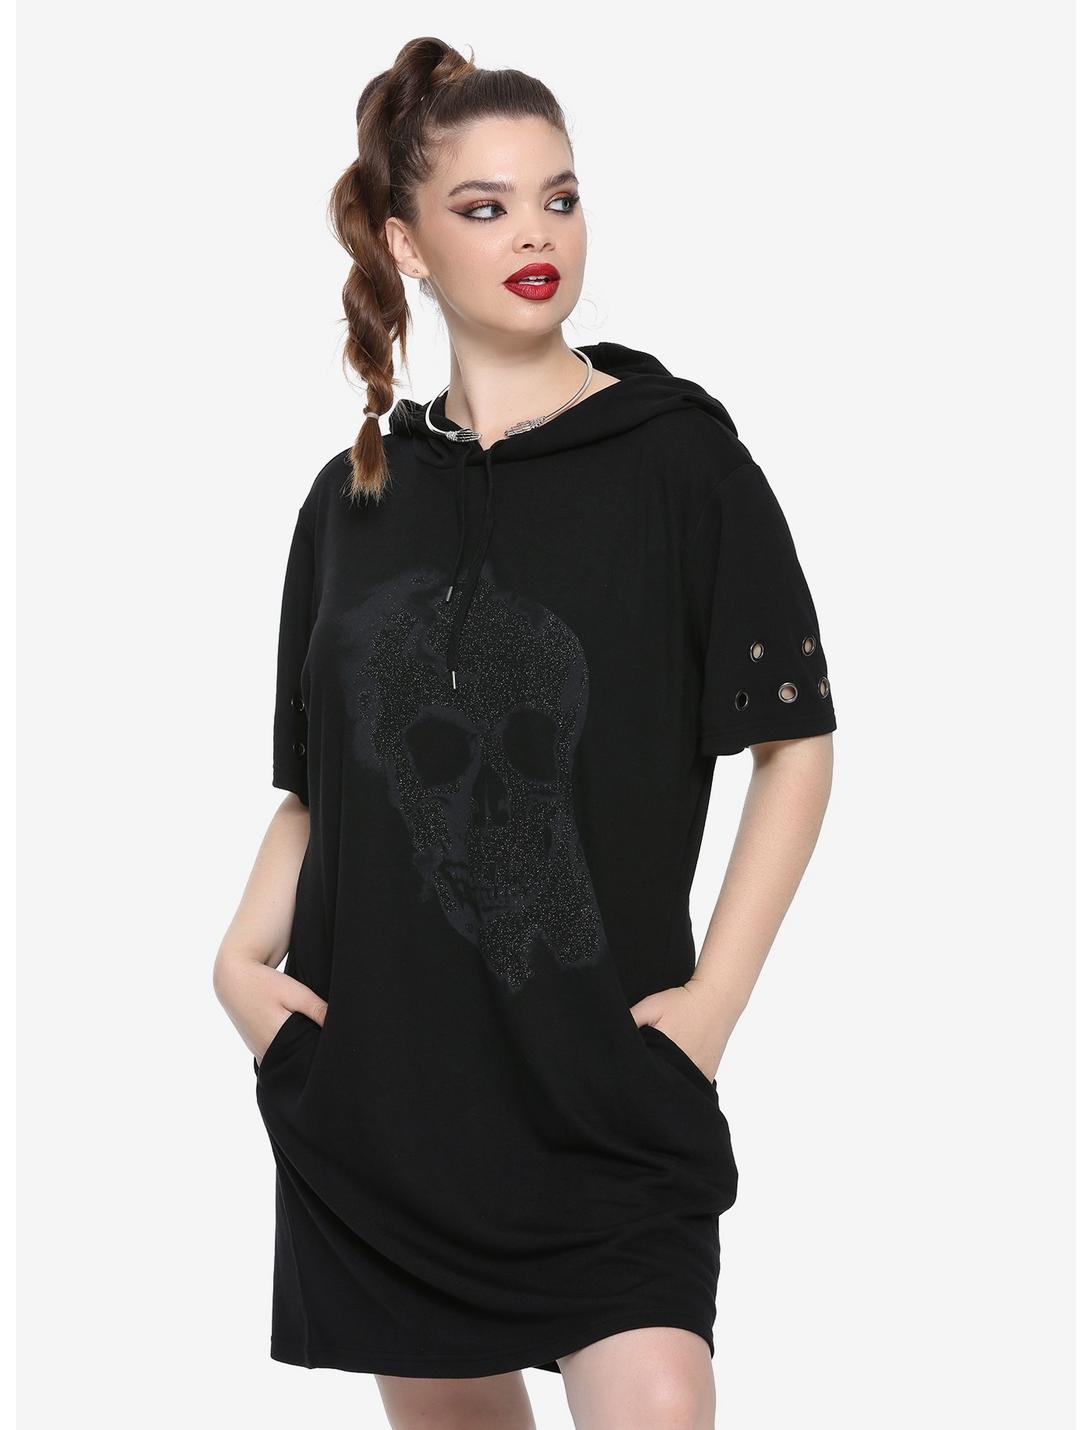 Black Glitter Skull Hematite Grommet Short-Sleeve Hooded Dress Plus Size, BLACK, hi-res